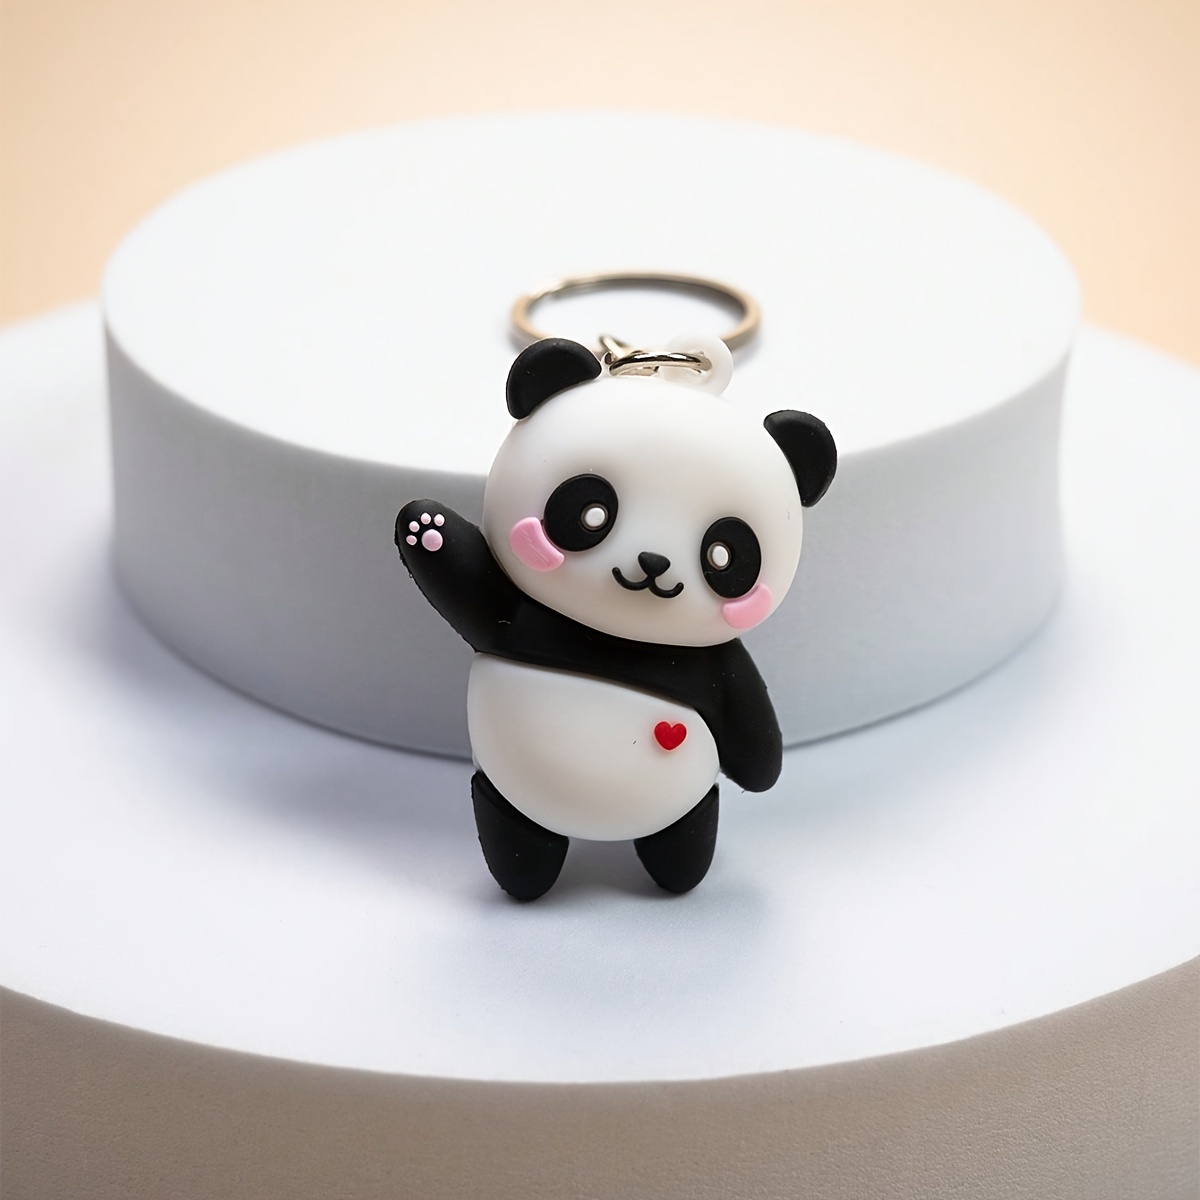 Panda Schlüsselanhänger - Kostenlose Rückgabe Innerhalb Von 90